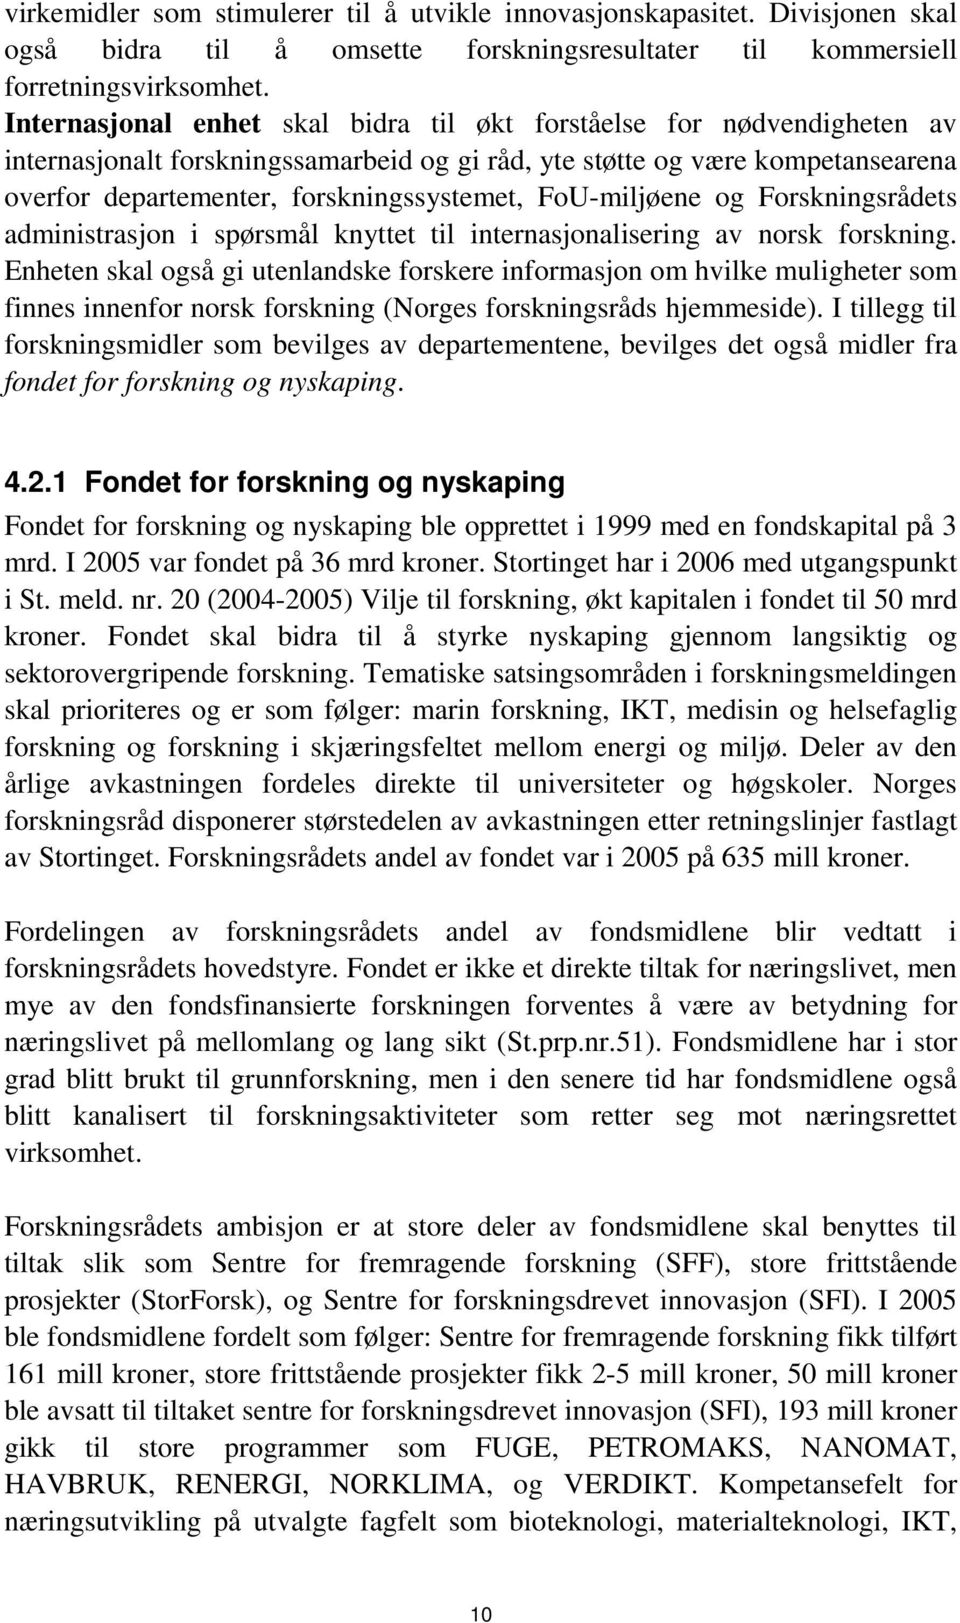 FoU-miljøene og Forskningsrådets administrasjon i spørsmål knyttet til internasjonalisering av norsk forskning.